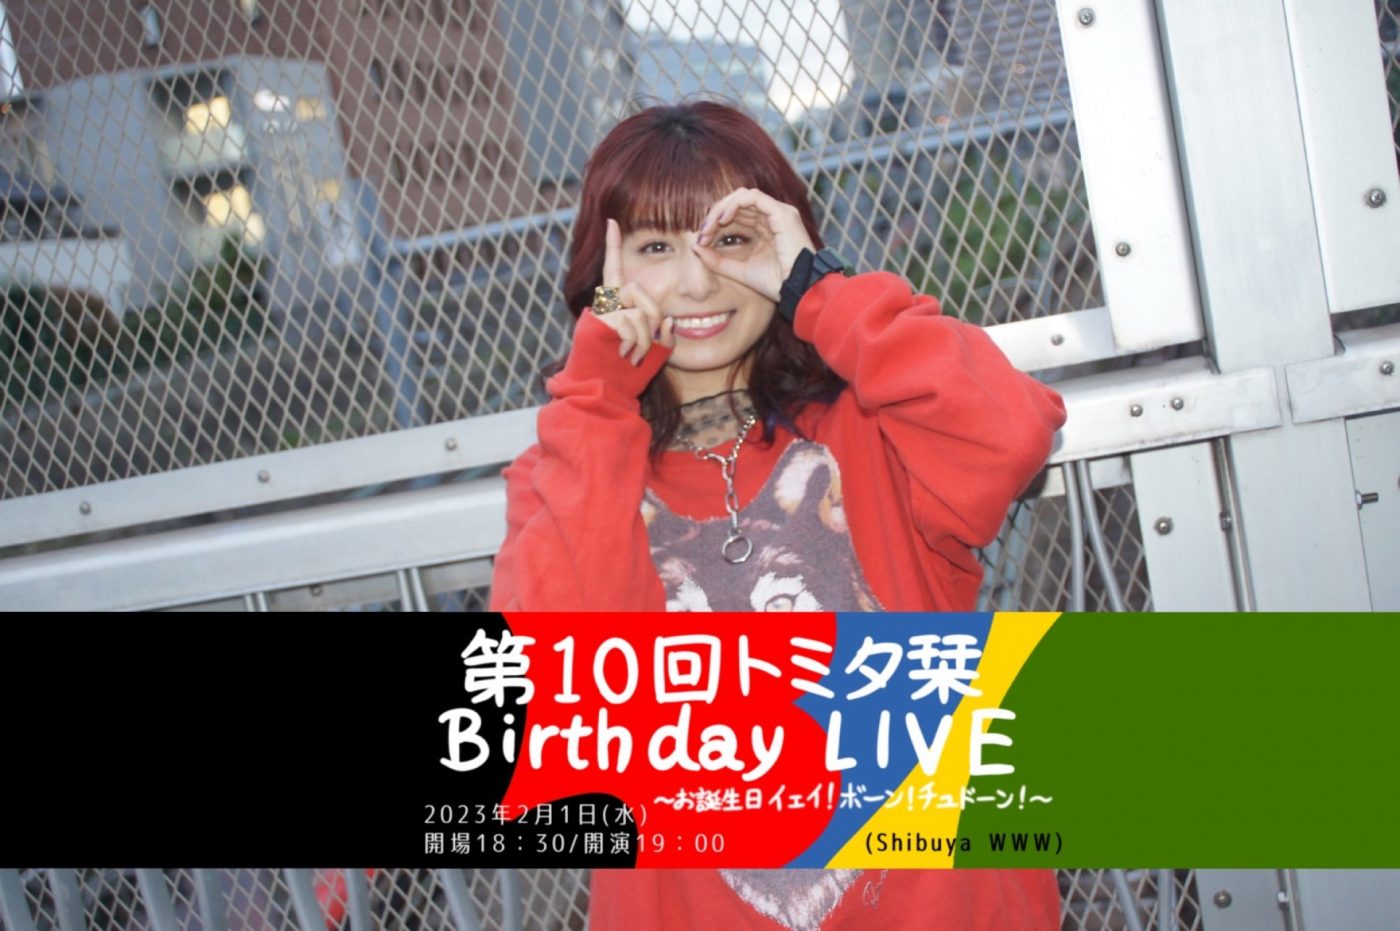 トミタ栞、『第10回トミタ栞Birthday LIVE』開催決定